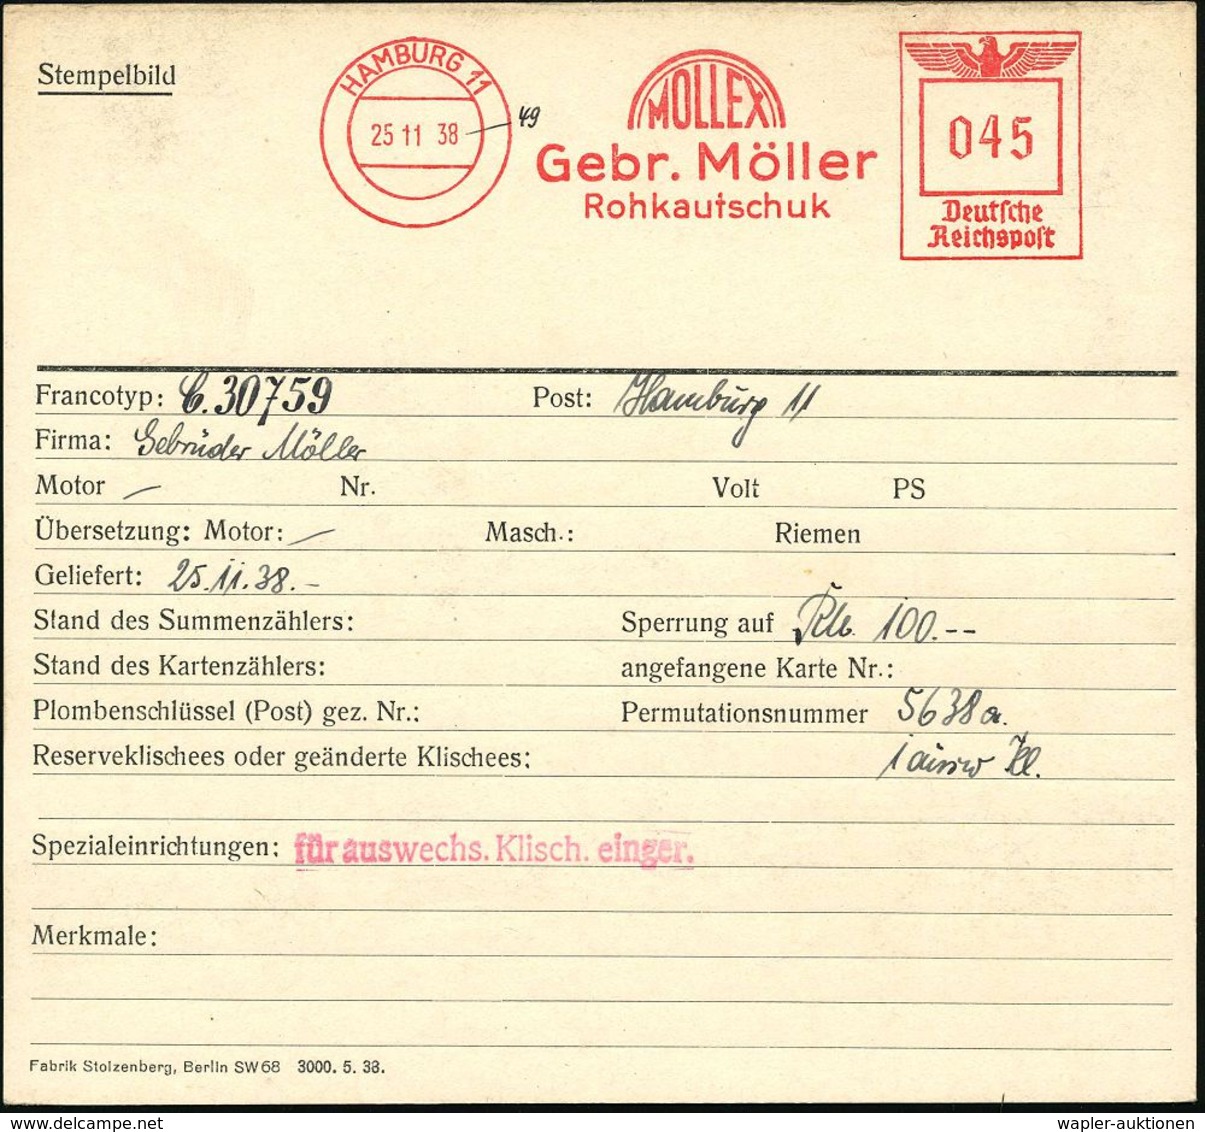 GUMMI / KAUTSCHUK : HAMBURG 11/ MOLLEX/ Gebr.Möller/ Rohkautschuk 1938 (25.11.) AFS 045 Pf., Archivmuster "Reichsadler"  - Chemistry